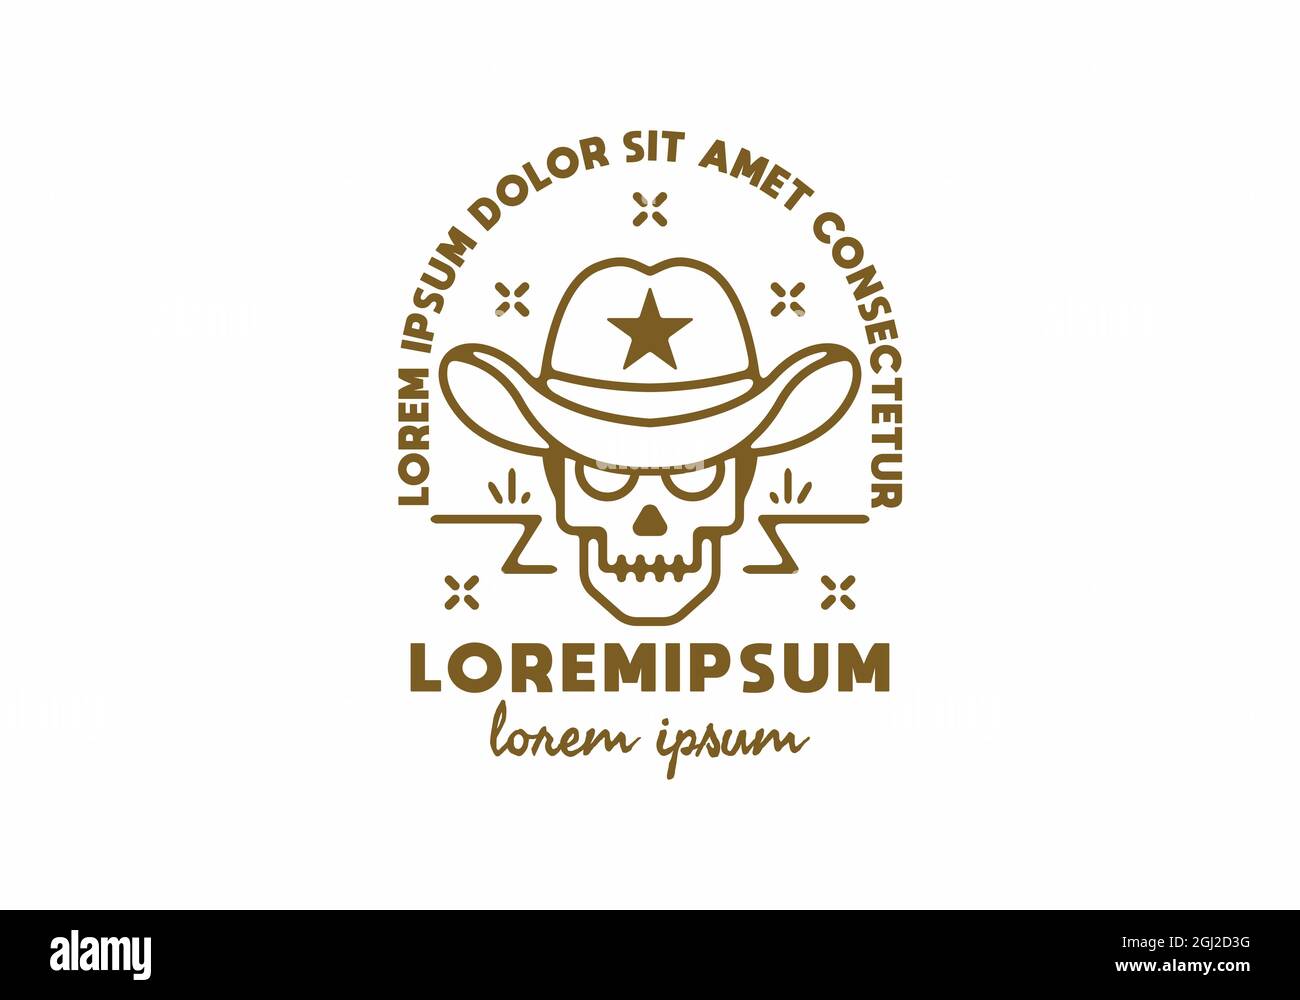 Dessin de la ligne de crâne de cow-boy avec lorem ipsum text design Illustration de Vecteur